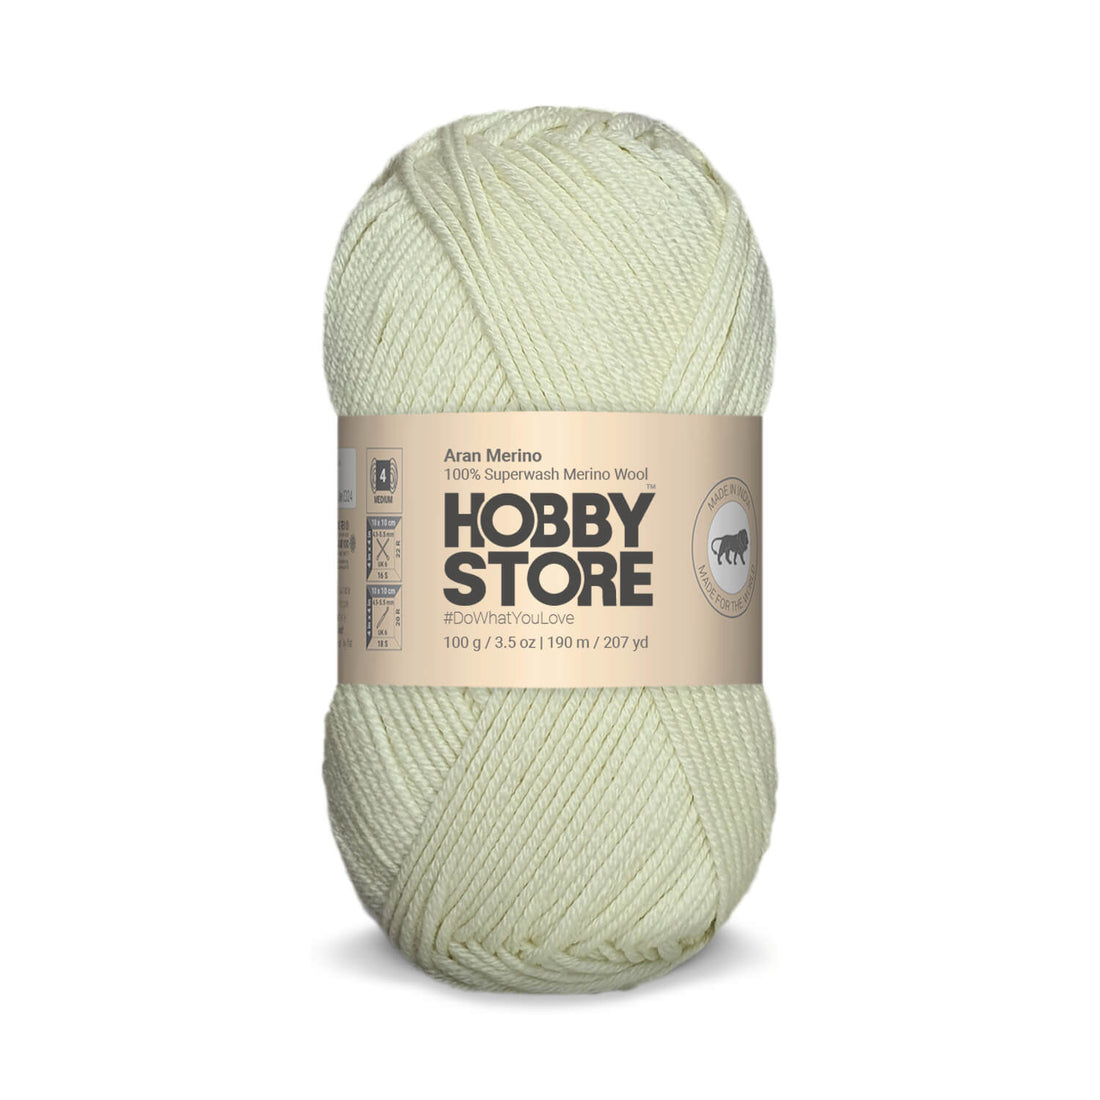 Aran Merino Wool by Hobby Store - Off White AM010